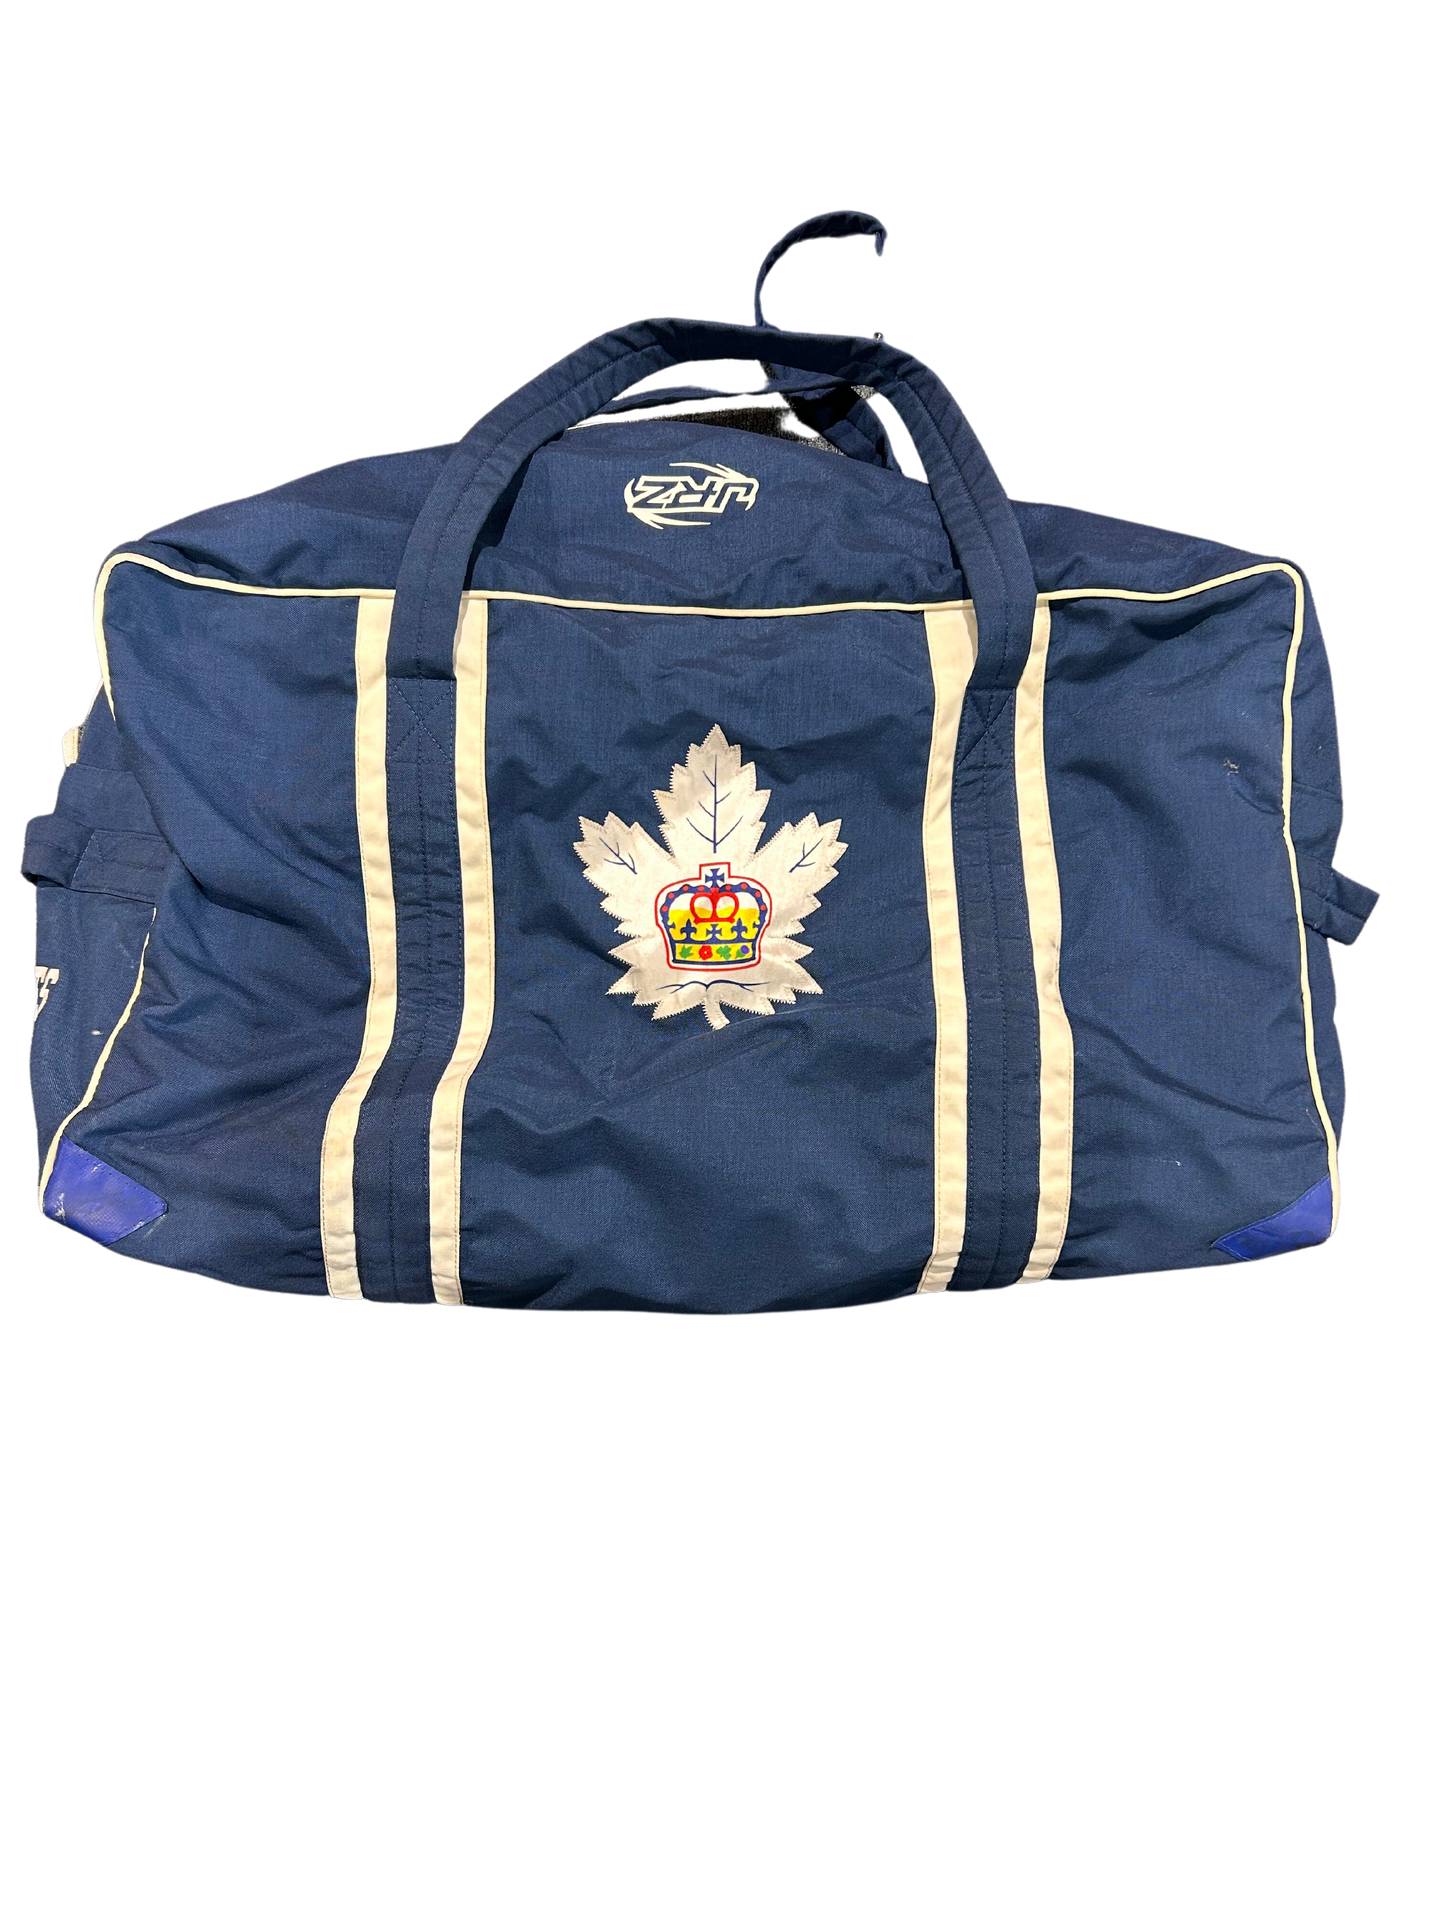 Toronto Marlies JRZ Player Carry Bag